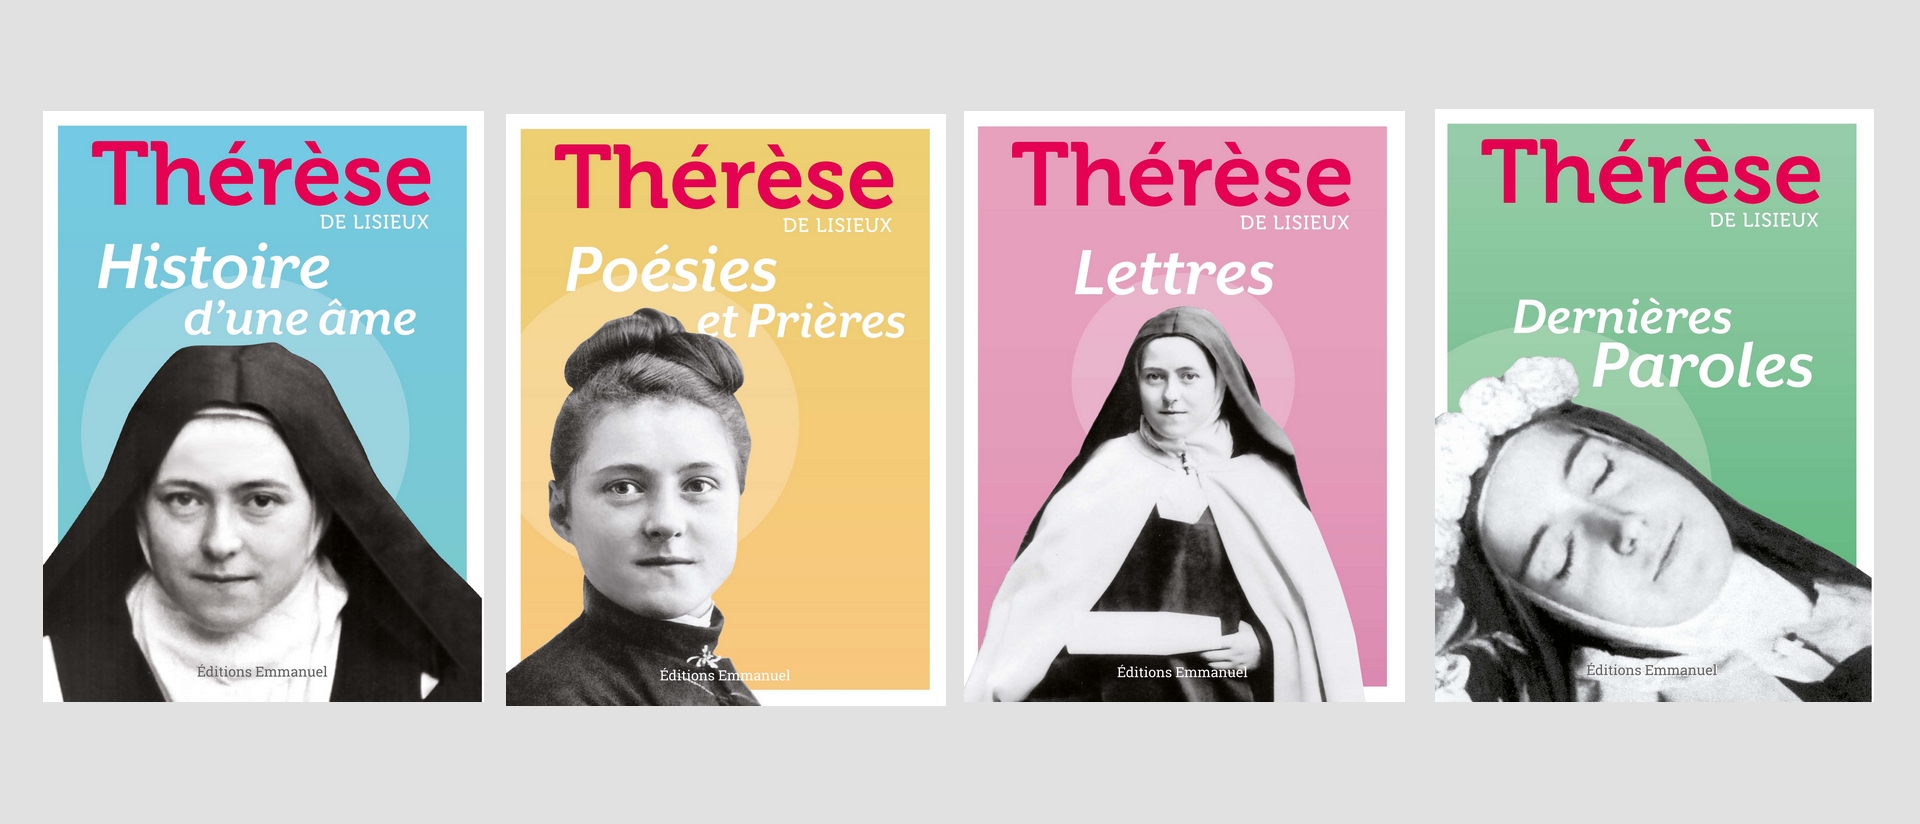 "Lire Thérèse de Lisieux, c'est rencontrer une personnalité audacieuse" 